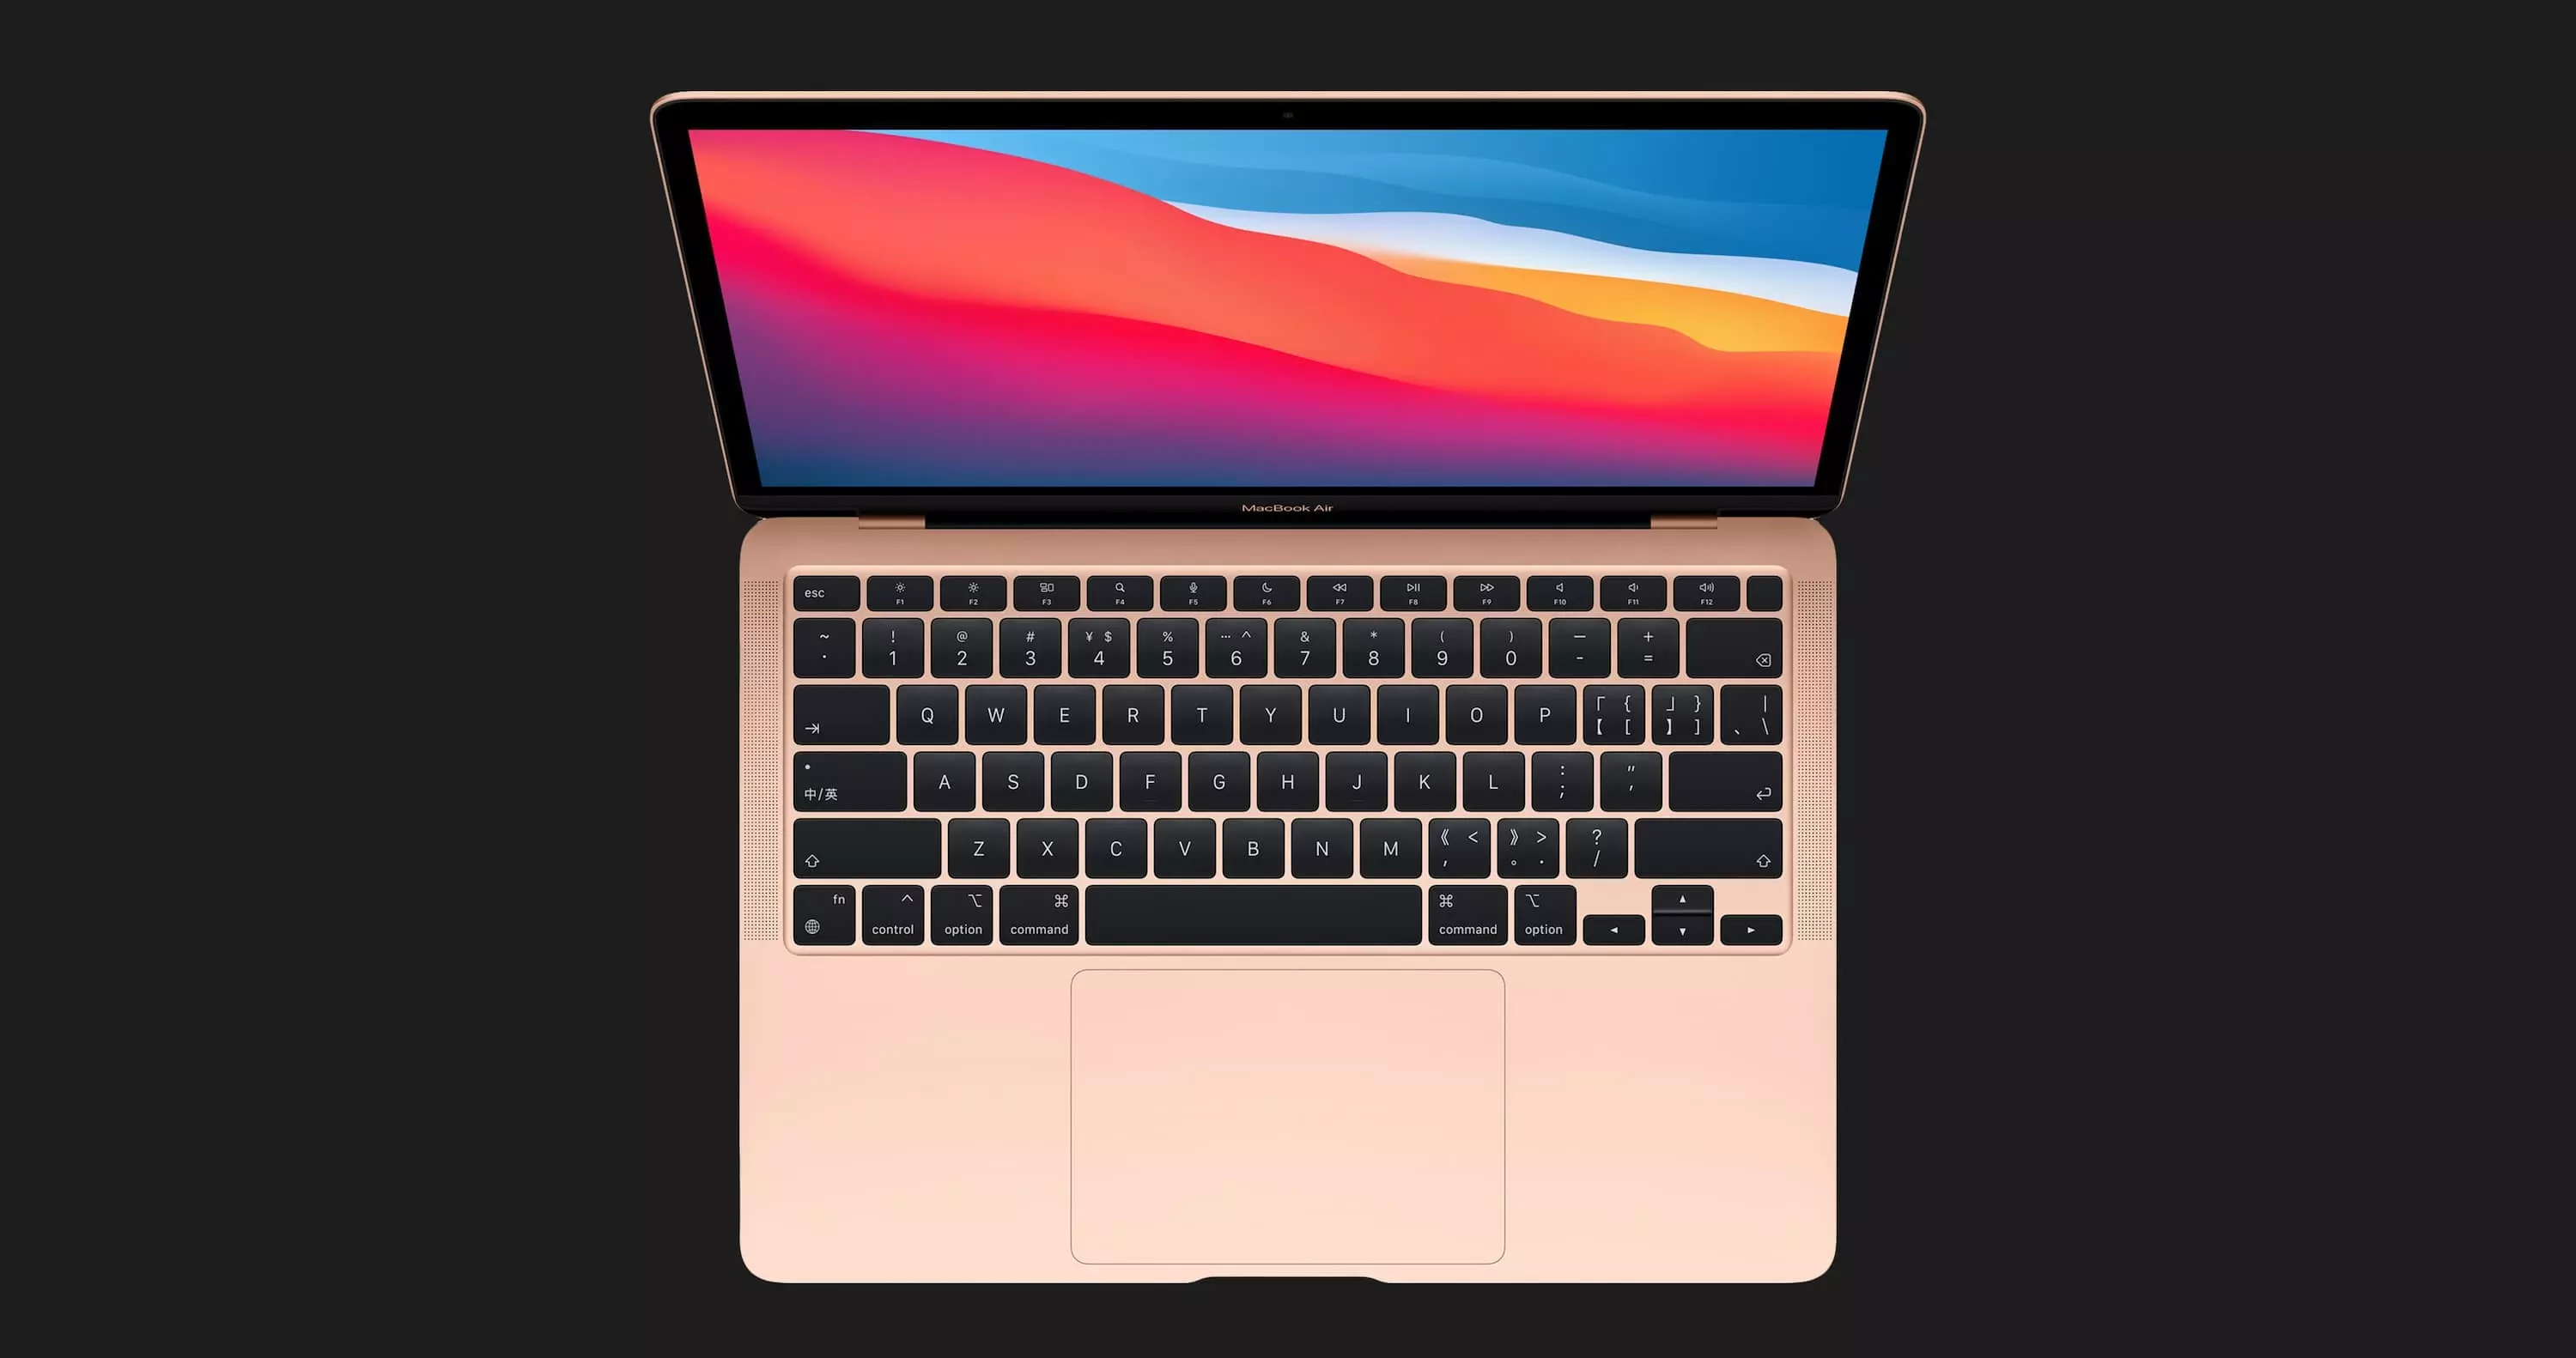 б/у Apple MacBook Air 13, 2019, Space Gray (256GB) (MVFJ2) (Ідеальний стан)